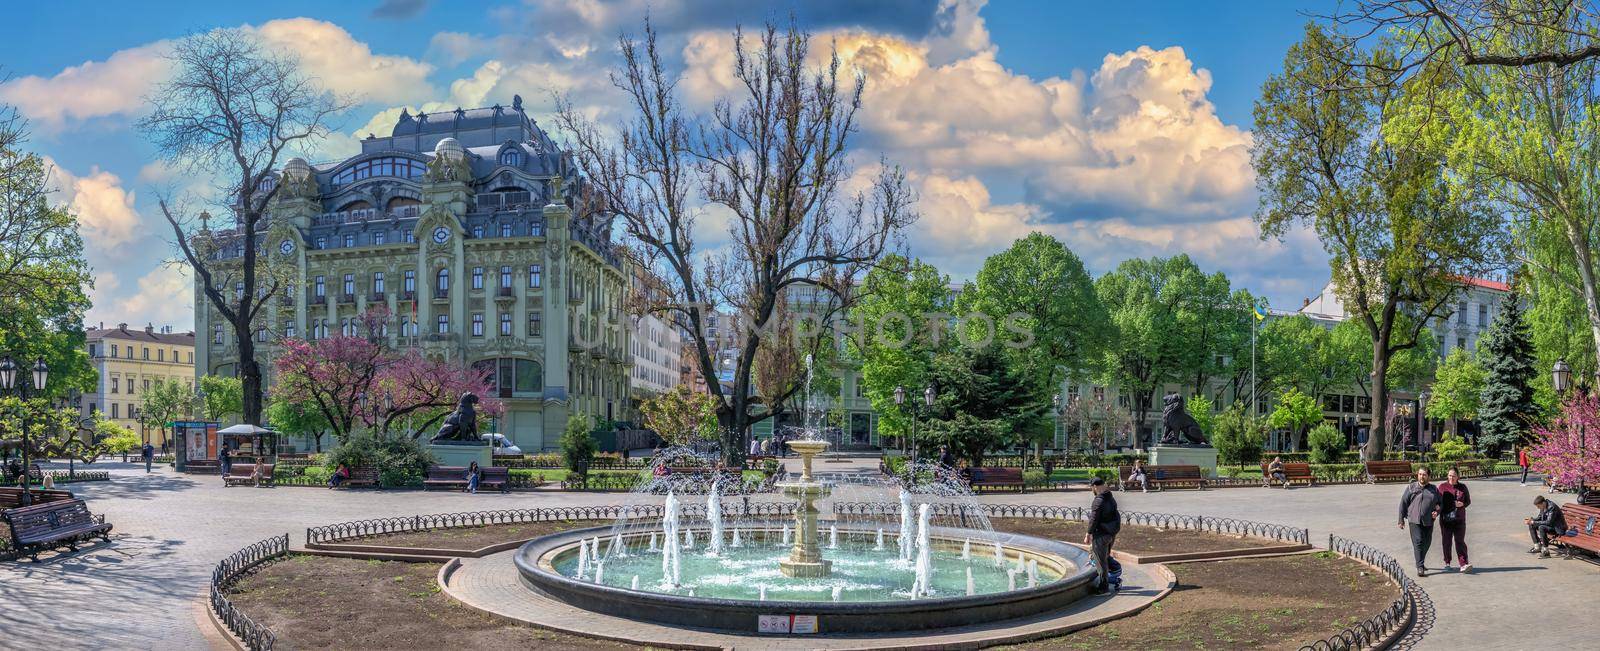 Odessa, Ukraine 06.05.2022. Fountain in the City garden in Odessa during the war in Ukraine on a sunny spring day